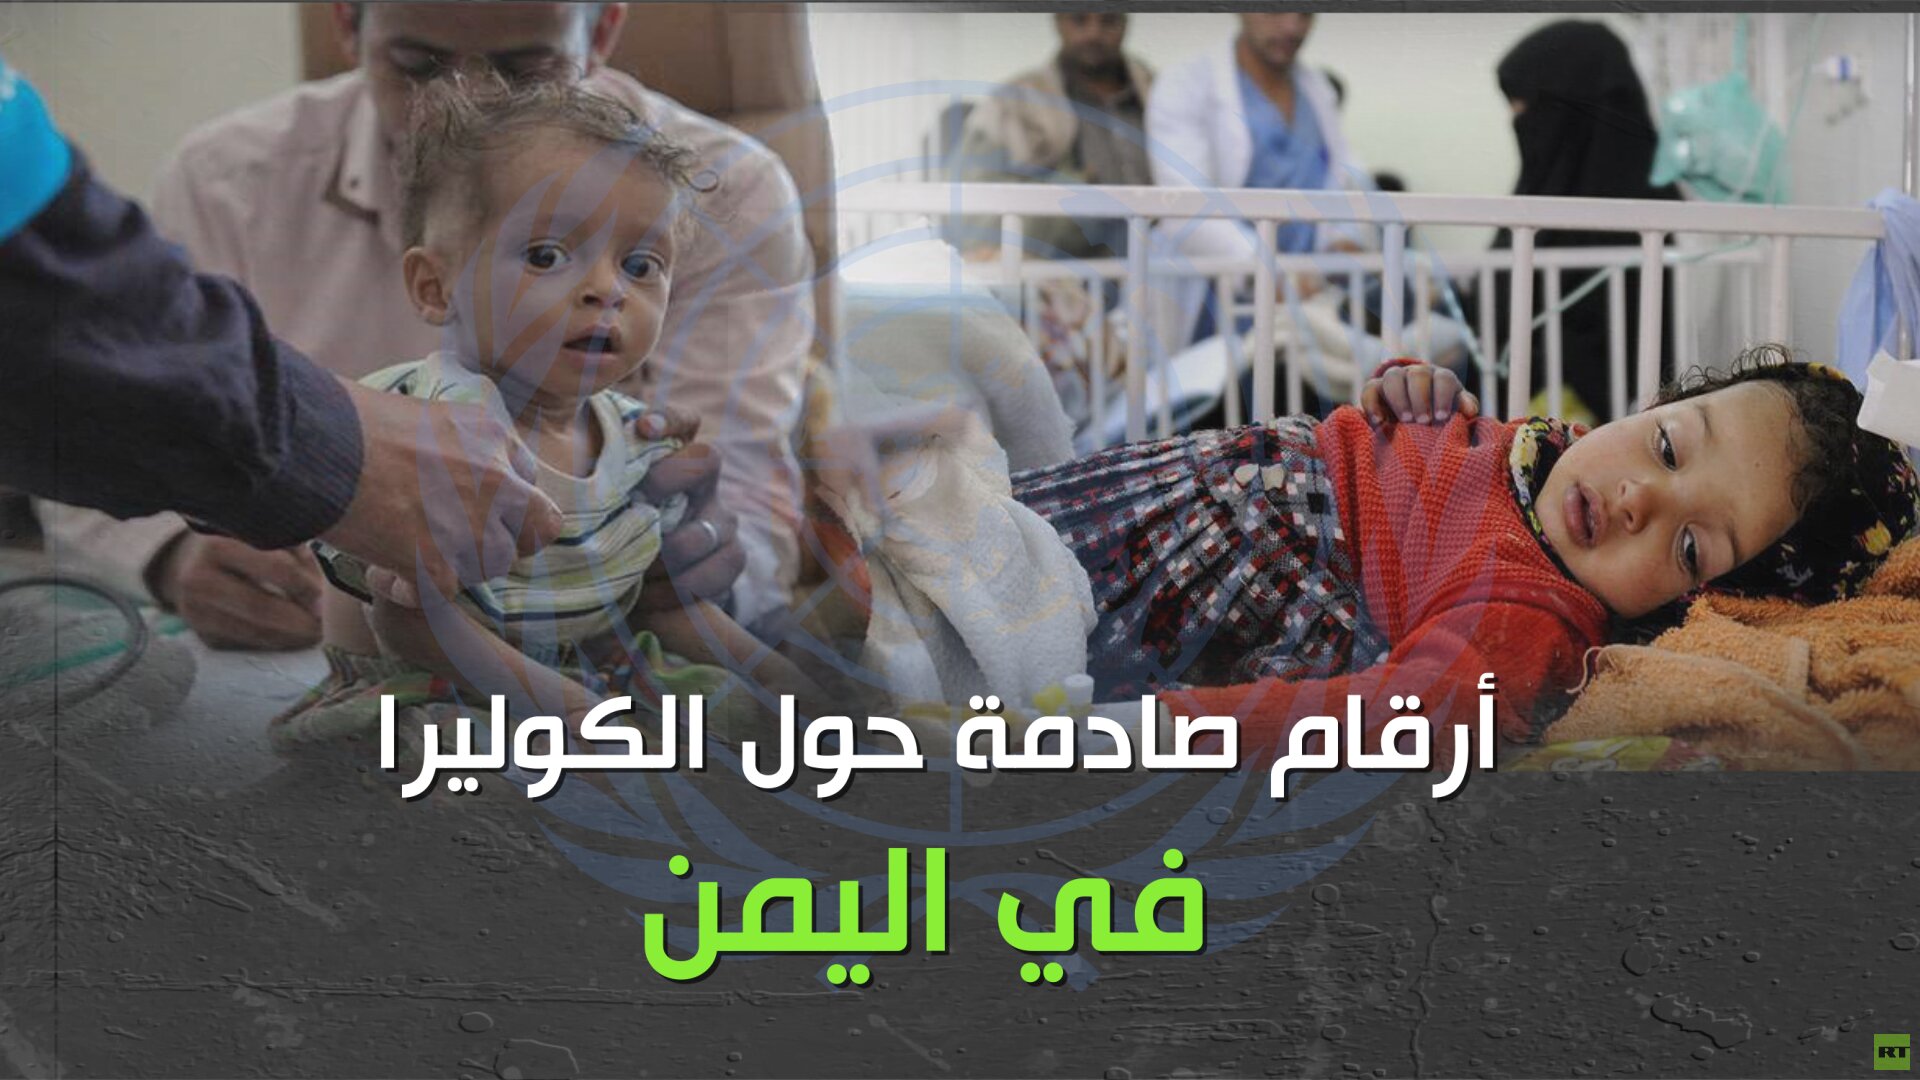 وباء الكوليرا يحصد أرواح اليمنيين.. هل كُتب على أبناء اليمن الموت أو القتل!